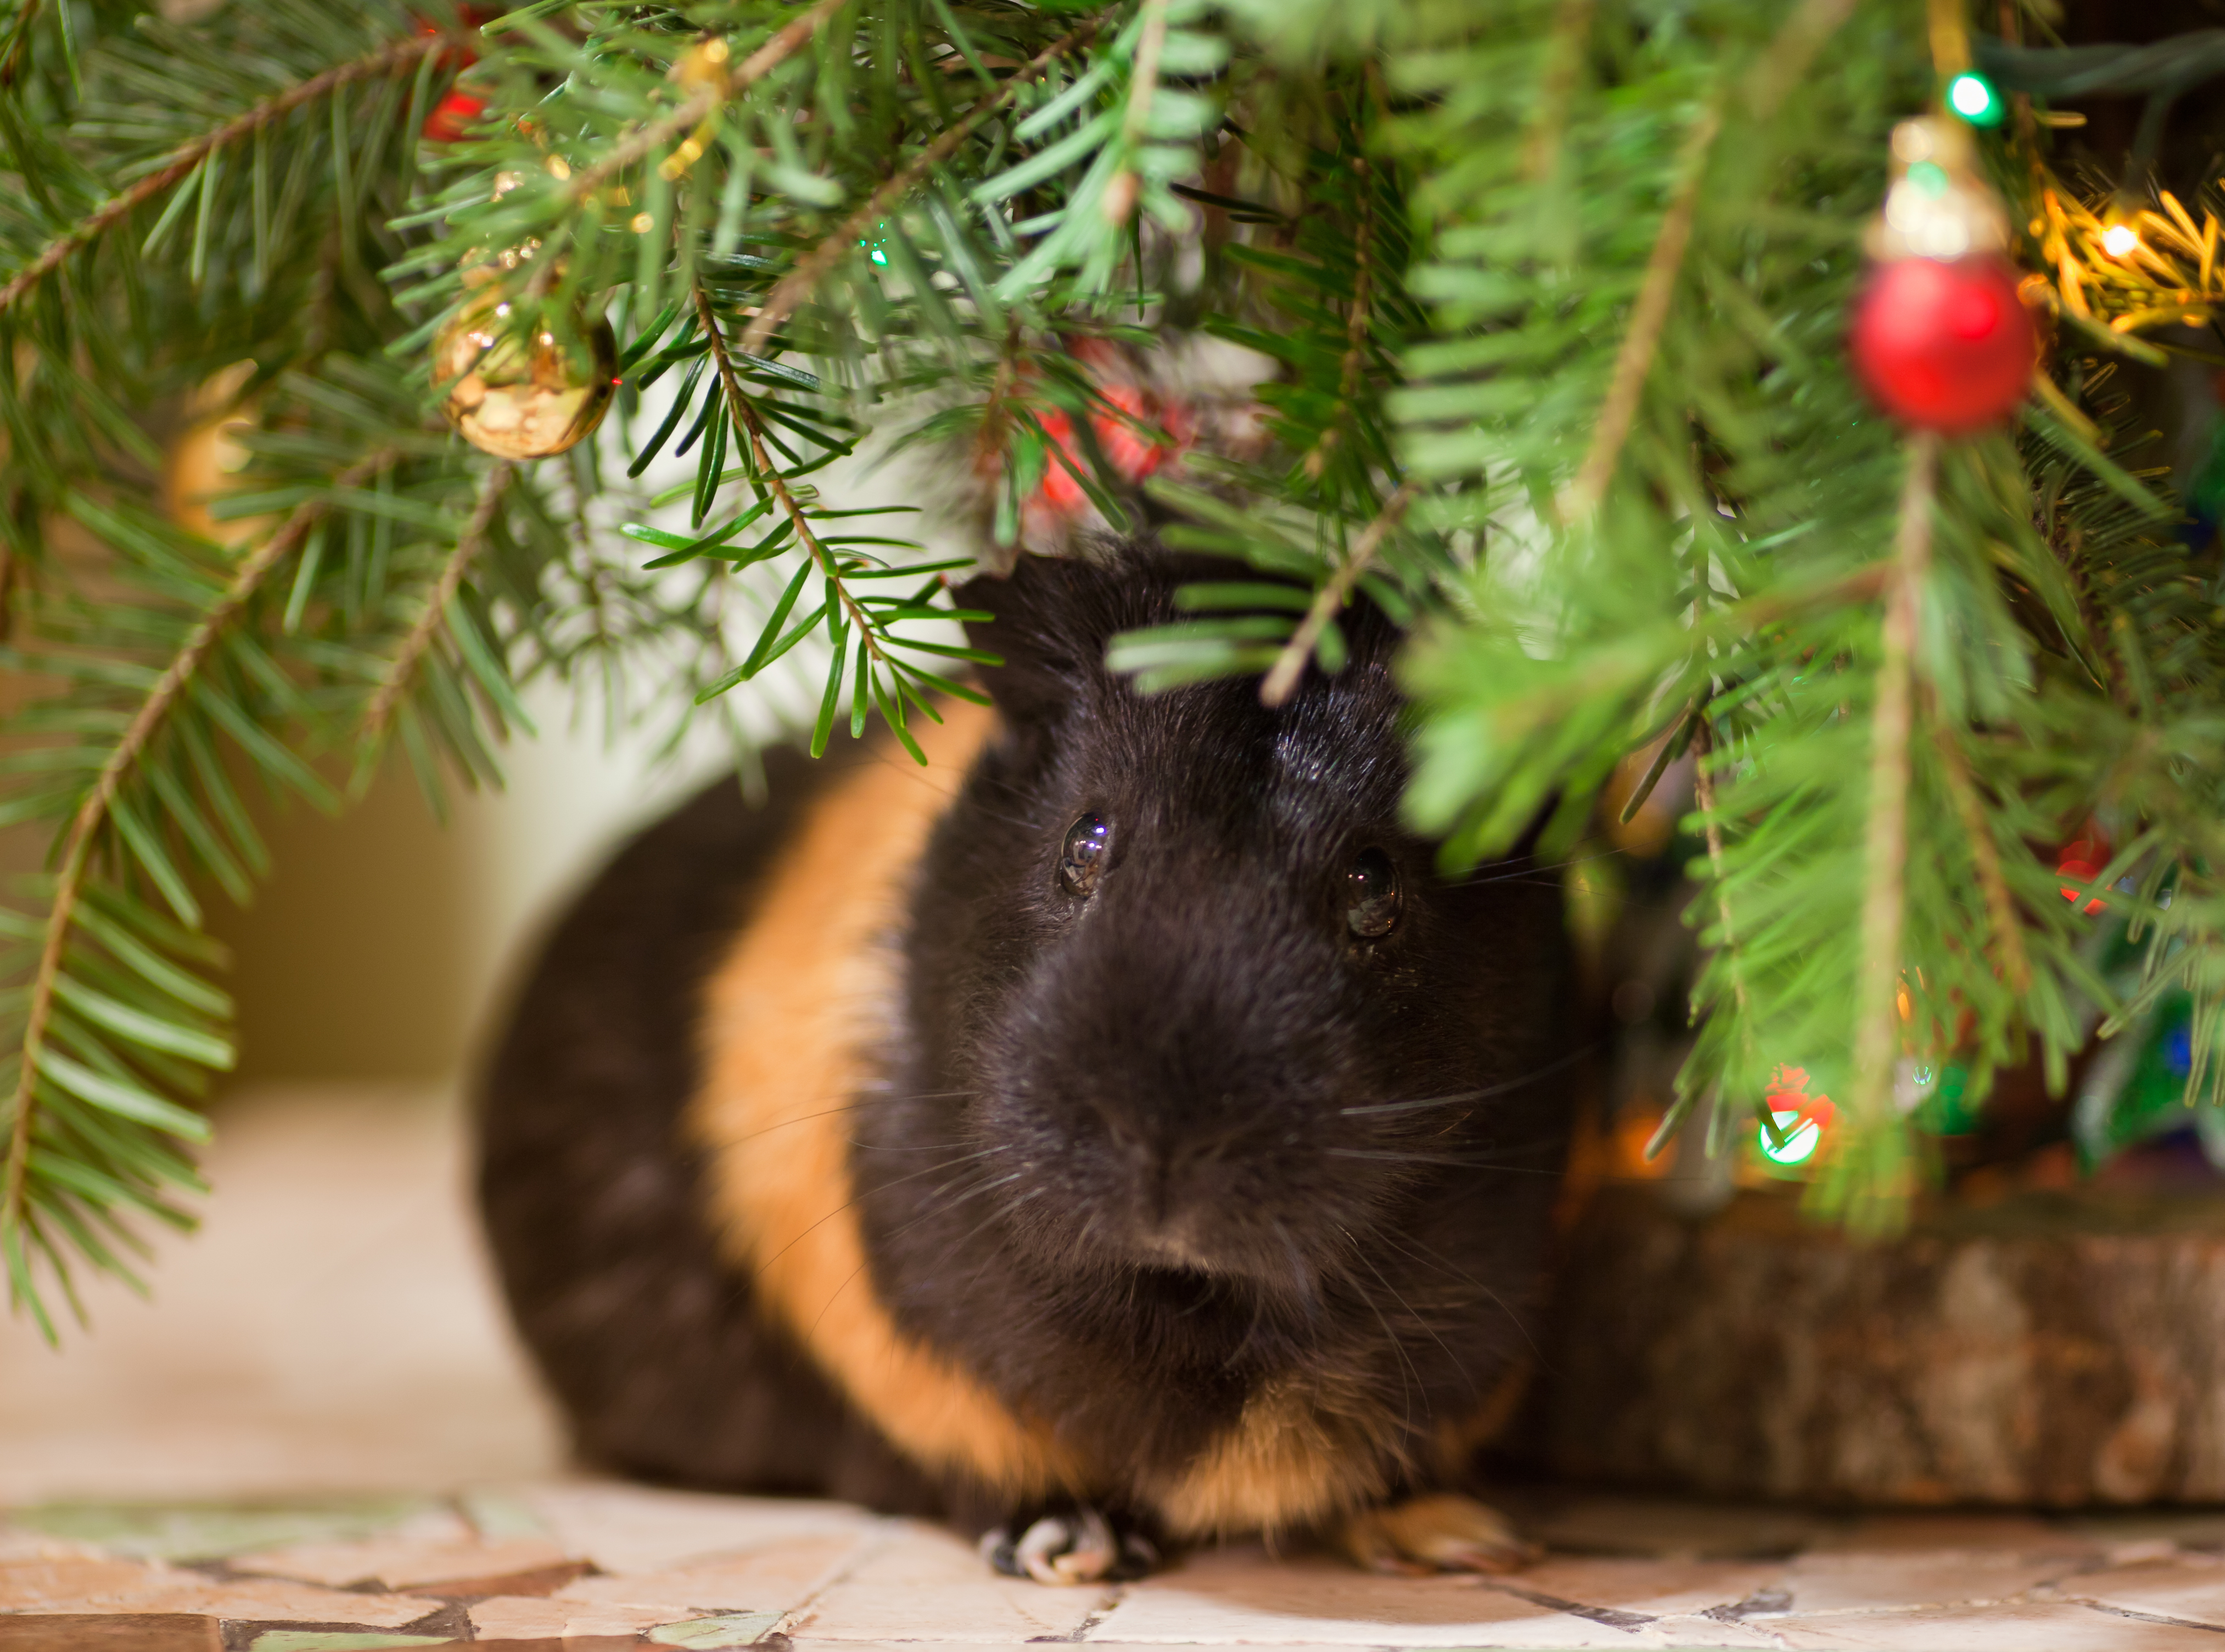 Guinea Pig under Christmas tree